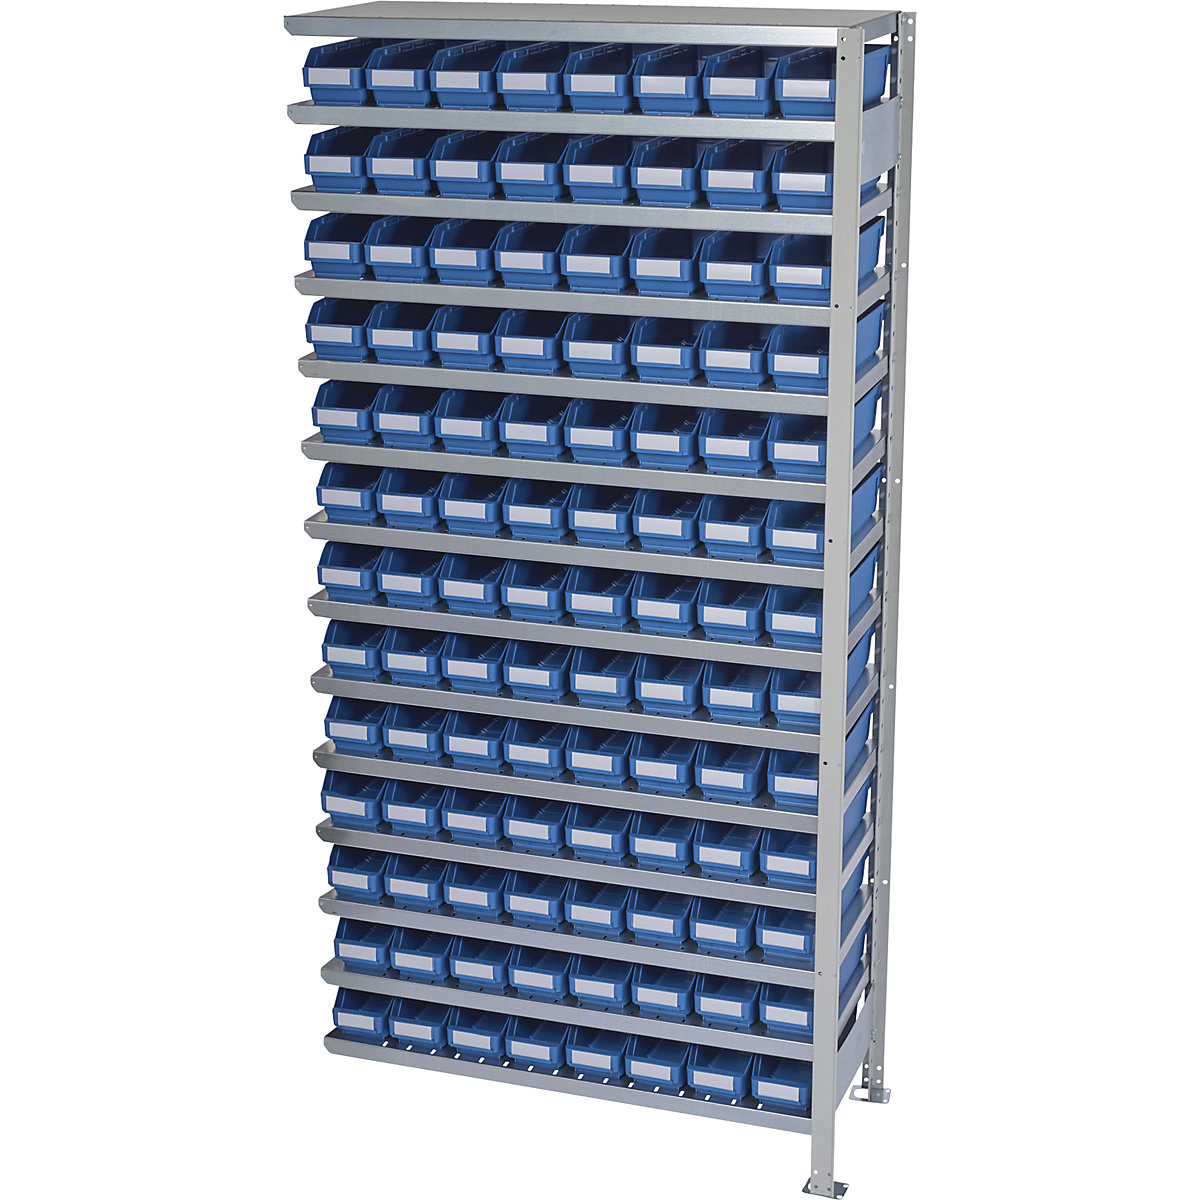 Összedugaszolós állvány dobozokkal – STEMO, állványmagasság 2100 mm, bővítő állvány, 400 mm mély, 104 kék doboz-26